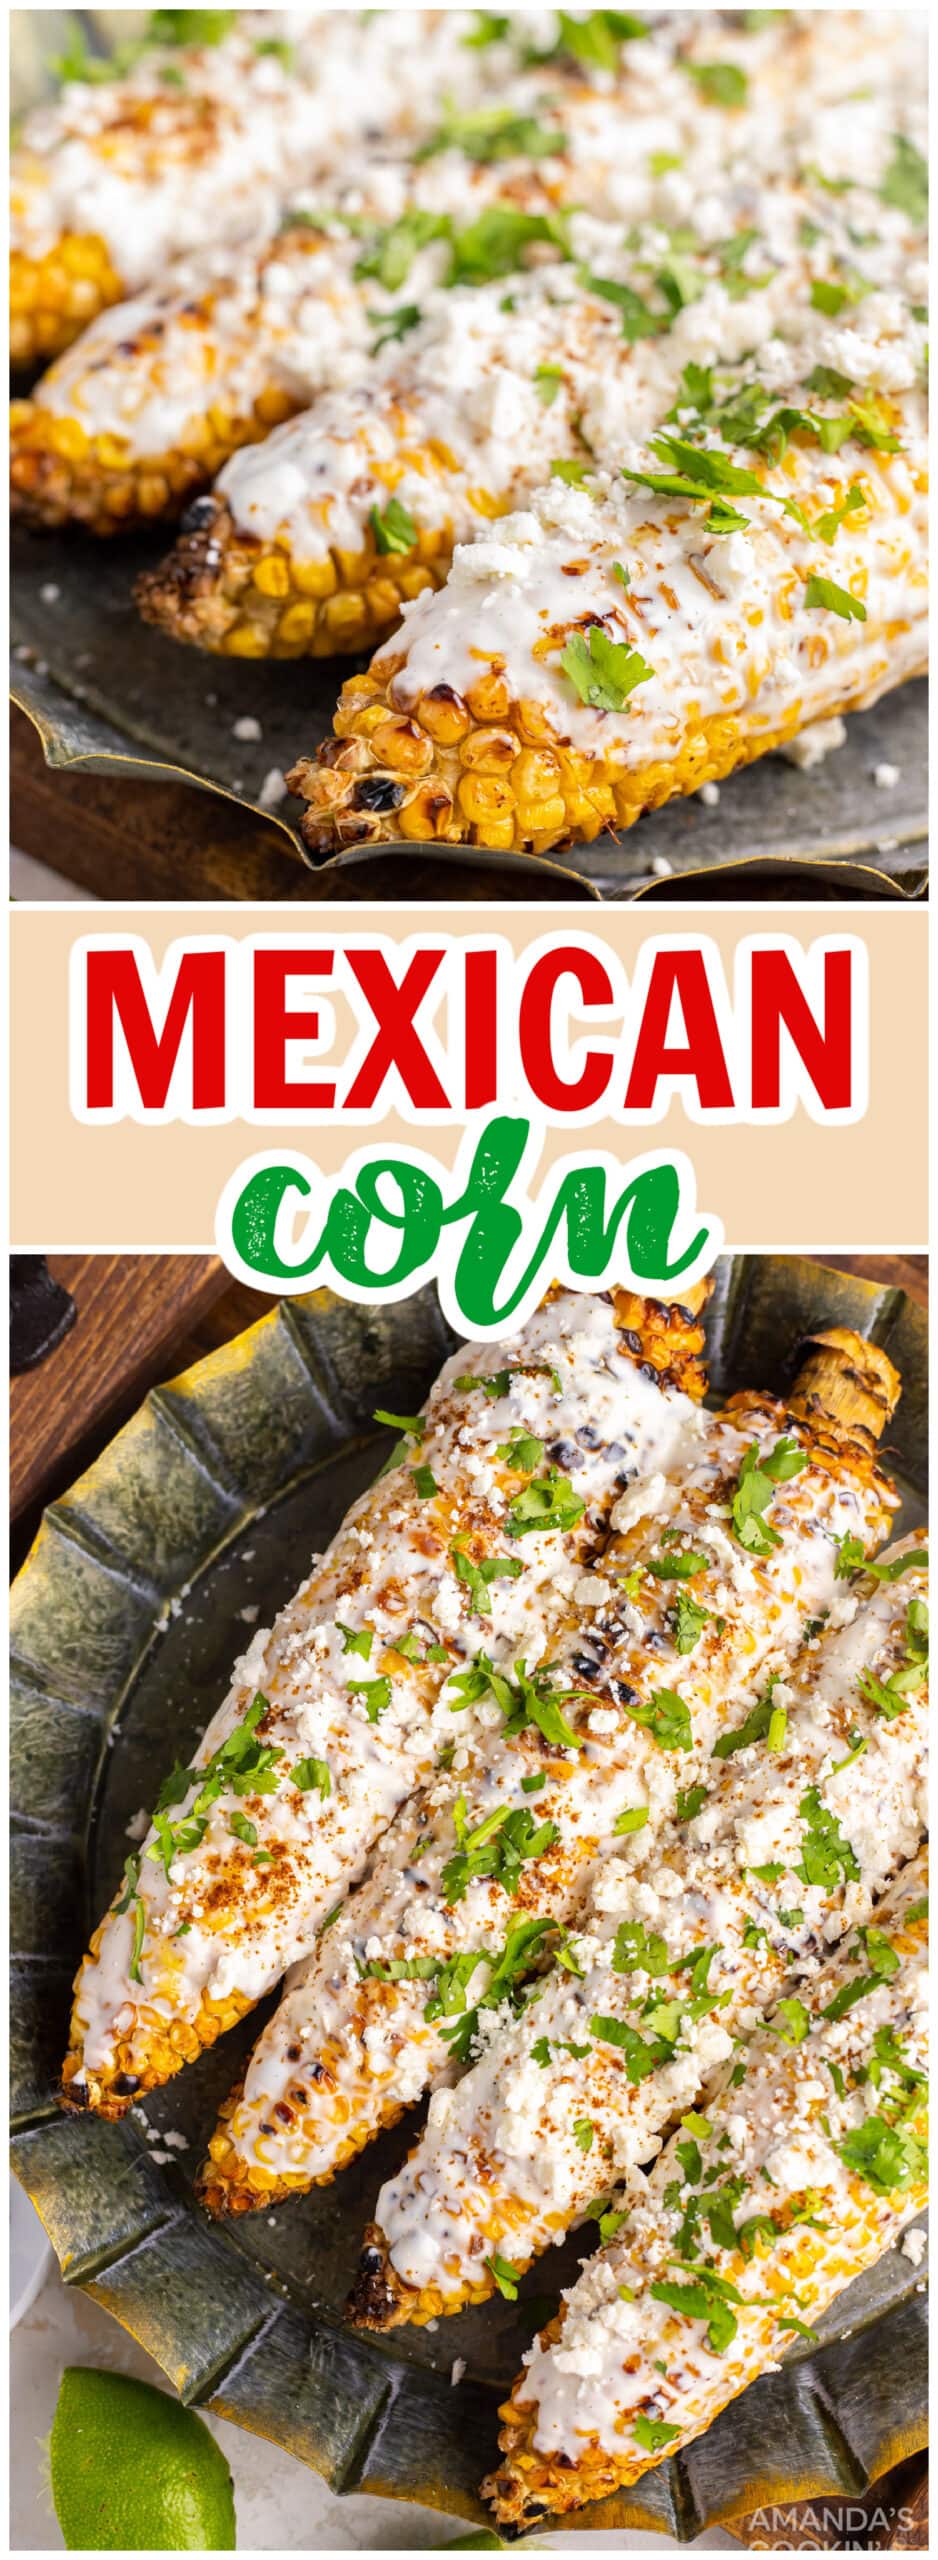 Mexican Corn - Amanda's Cookin' - Vegetables